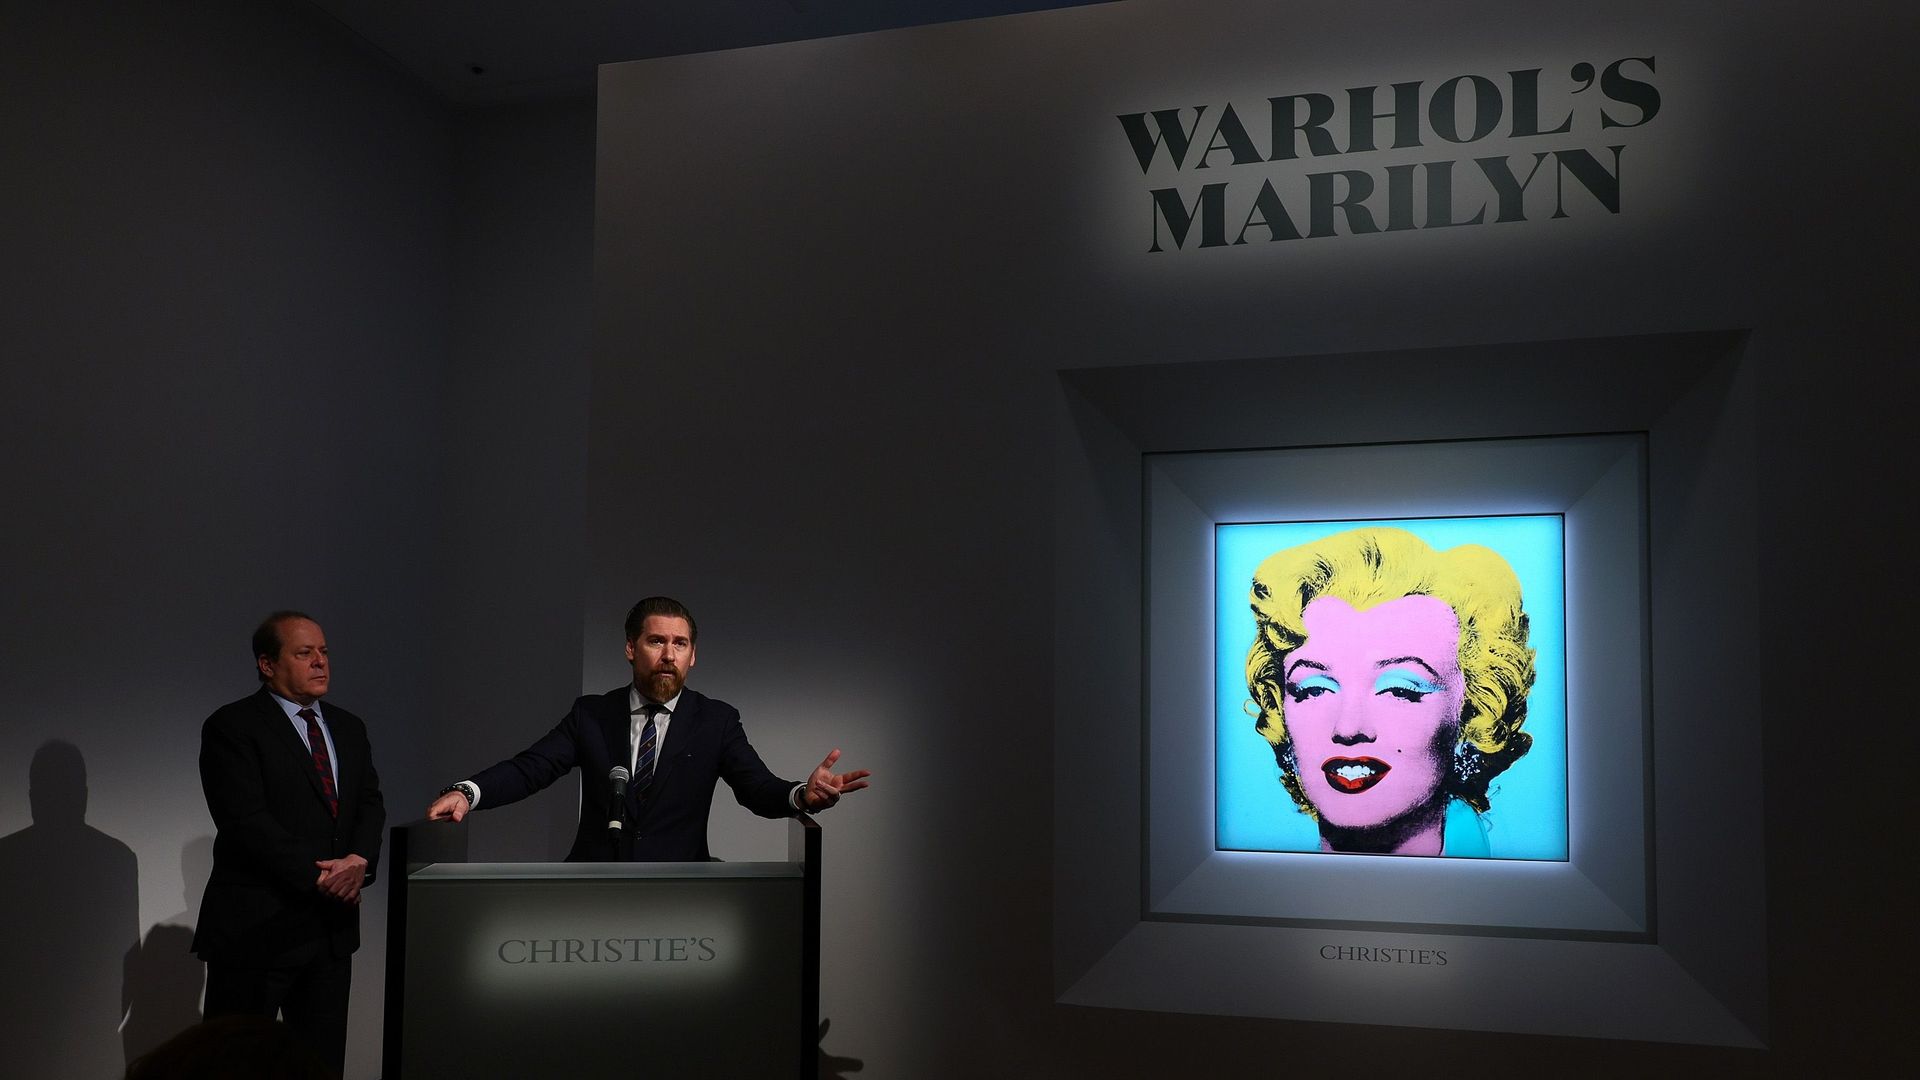 La maison Christie’s a annoncé lundi la vente en mai d’un portrait de Marilyn Monroe par Andy Warhol estimé à 200 millions de dollars.